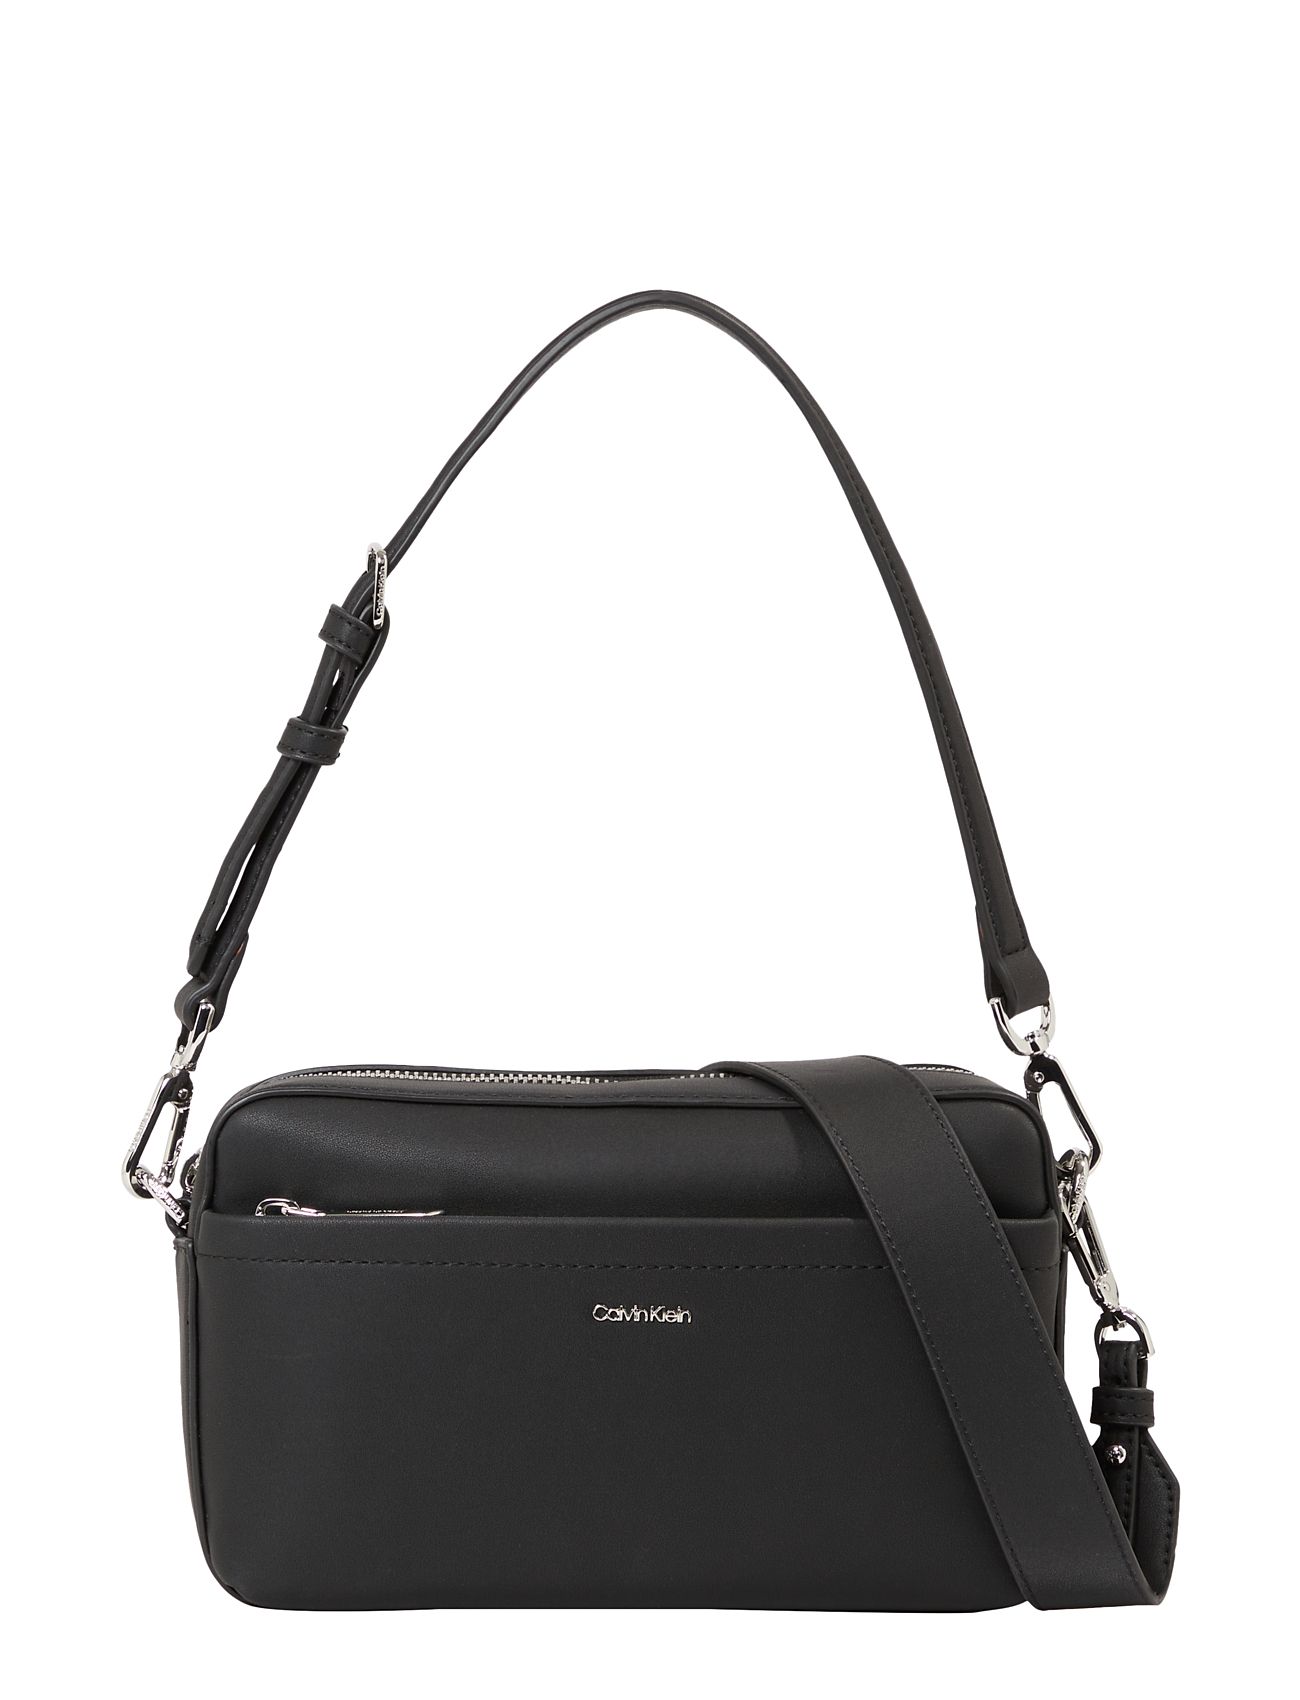 Ck Must Convertible Camera Bag Bags Small Shoulder Bags-crossbody Bags Black Calvin Klein